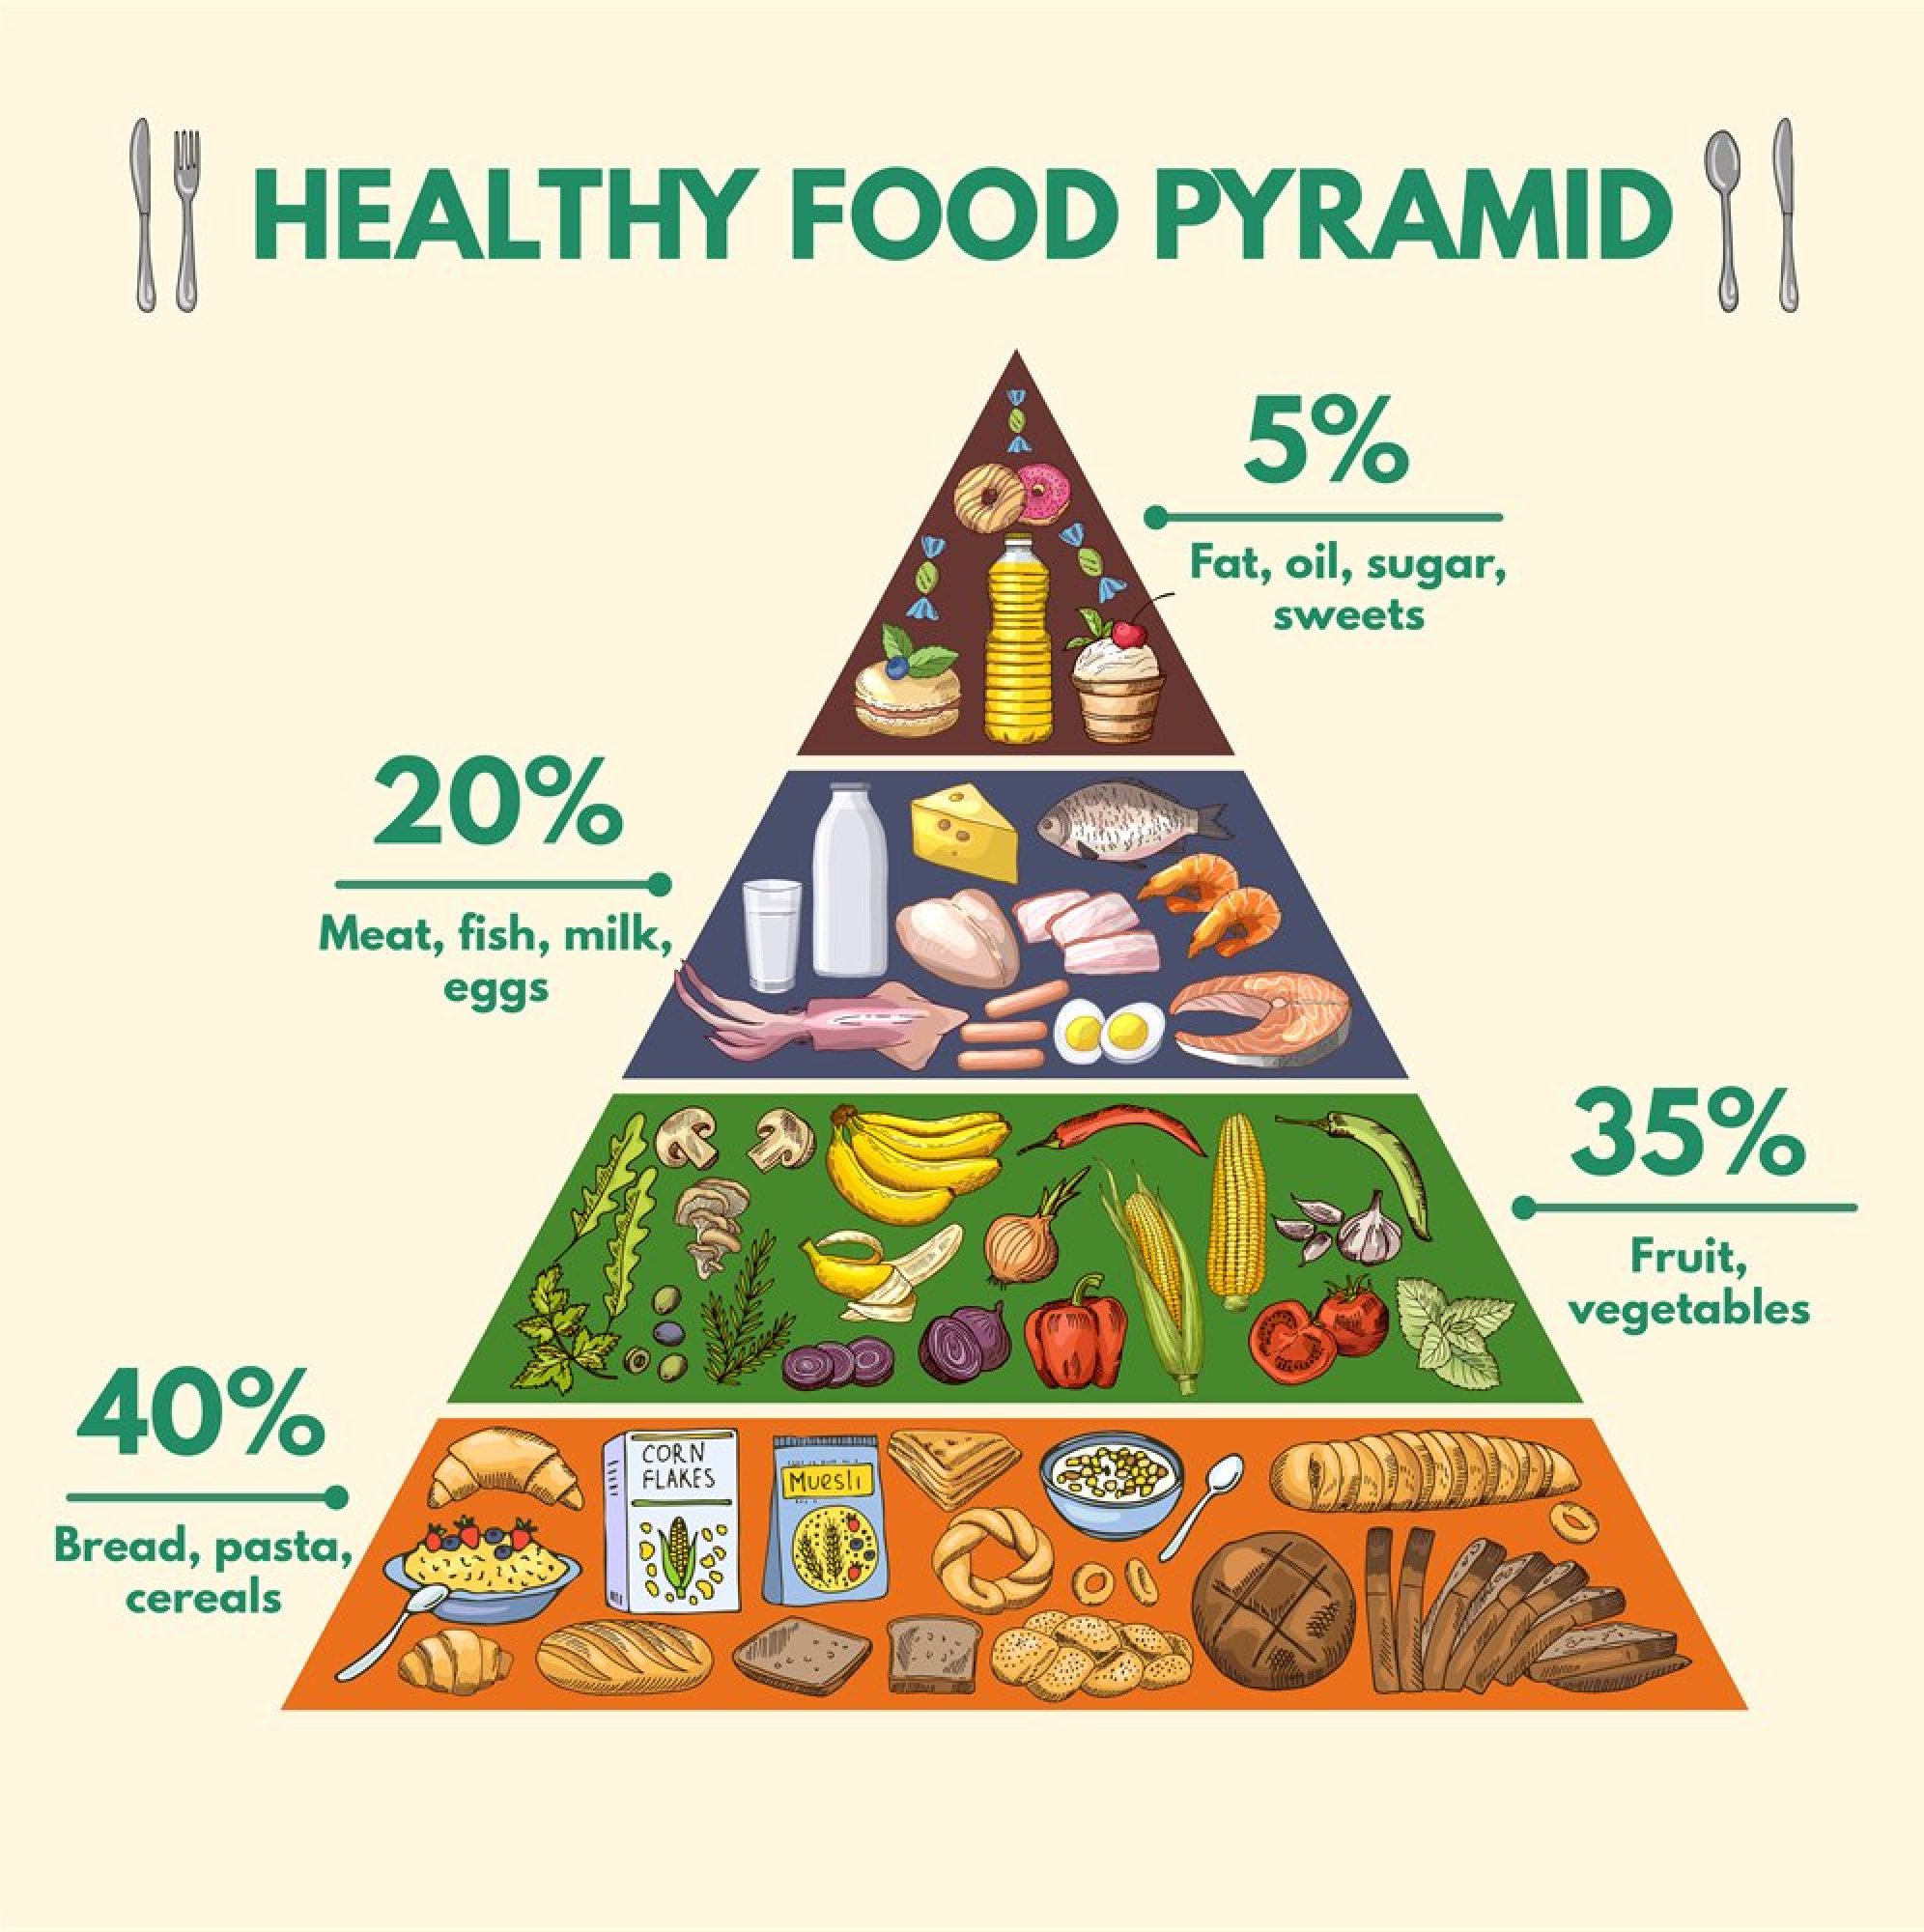 译者备注：从其他网站找到的案例《健康饮食金字塔》